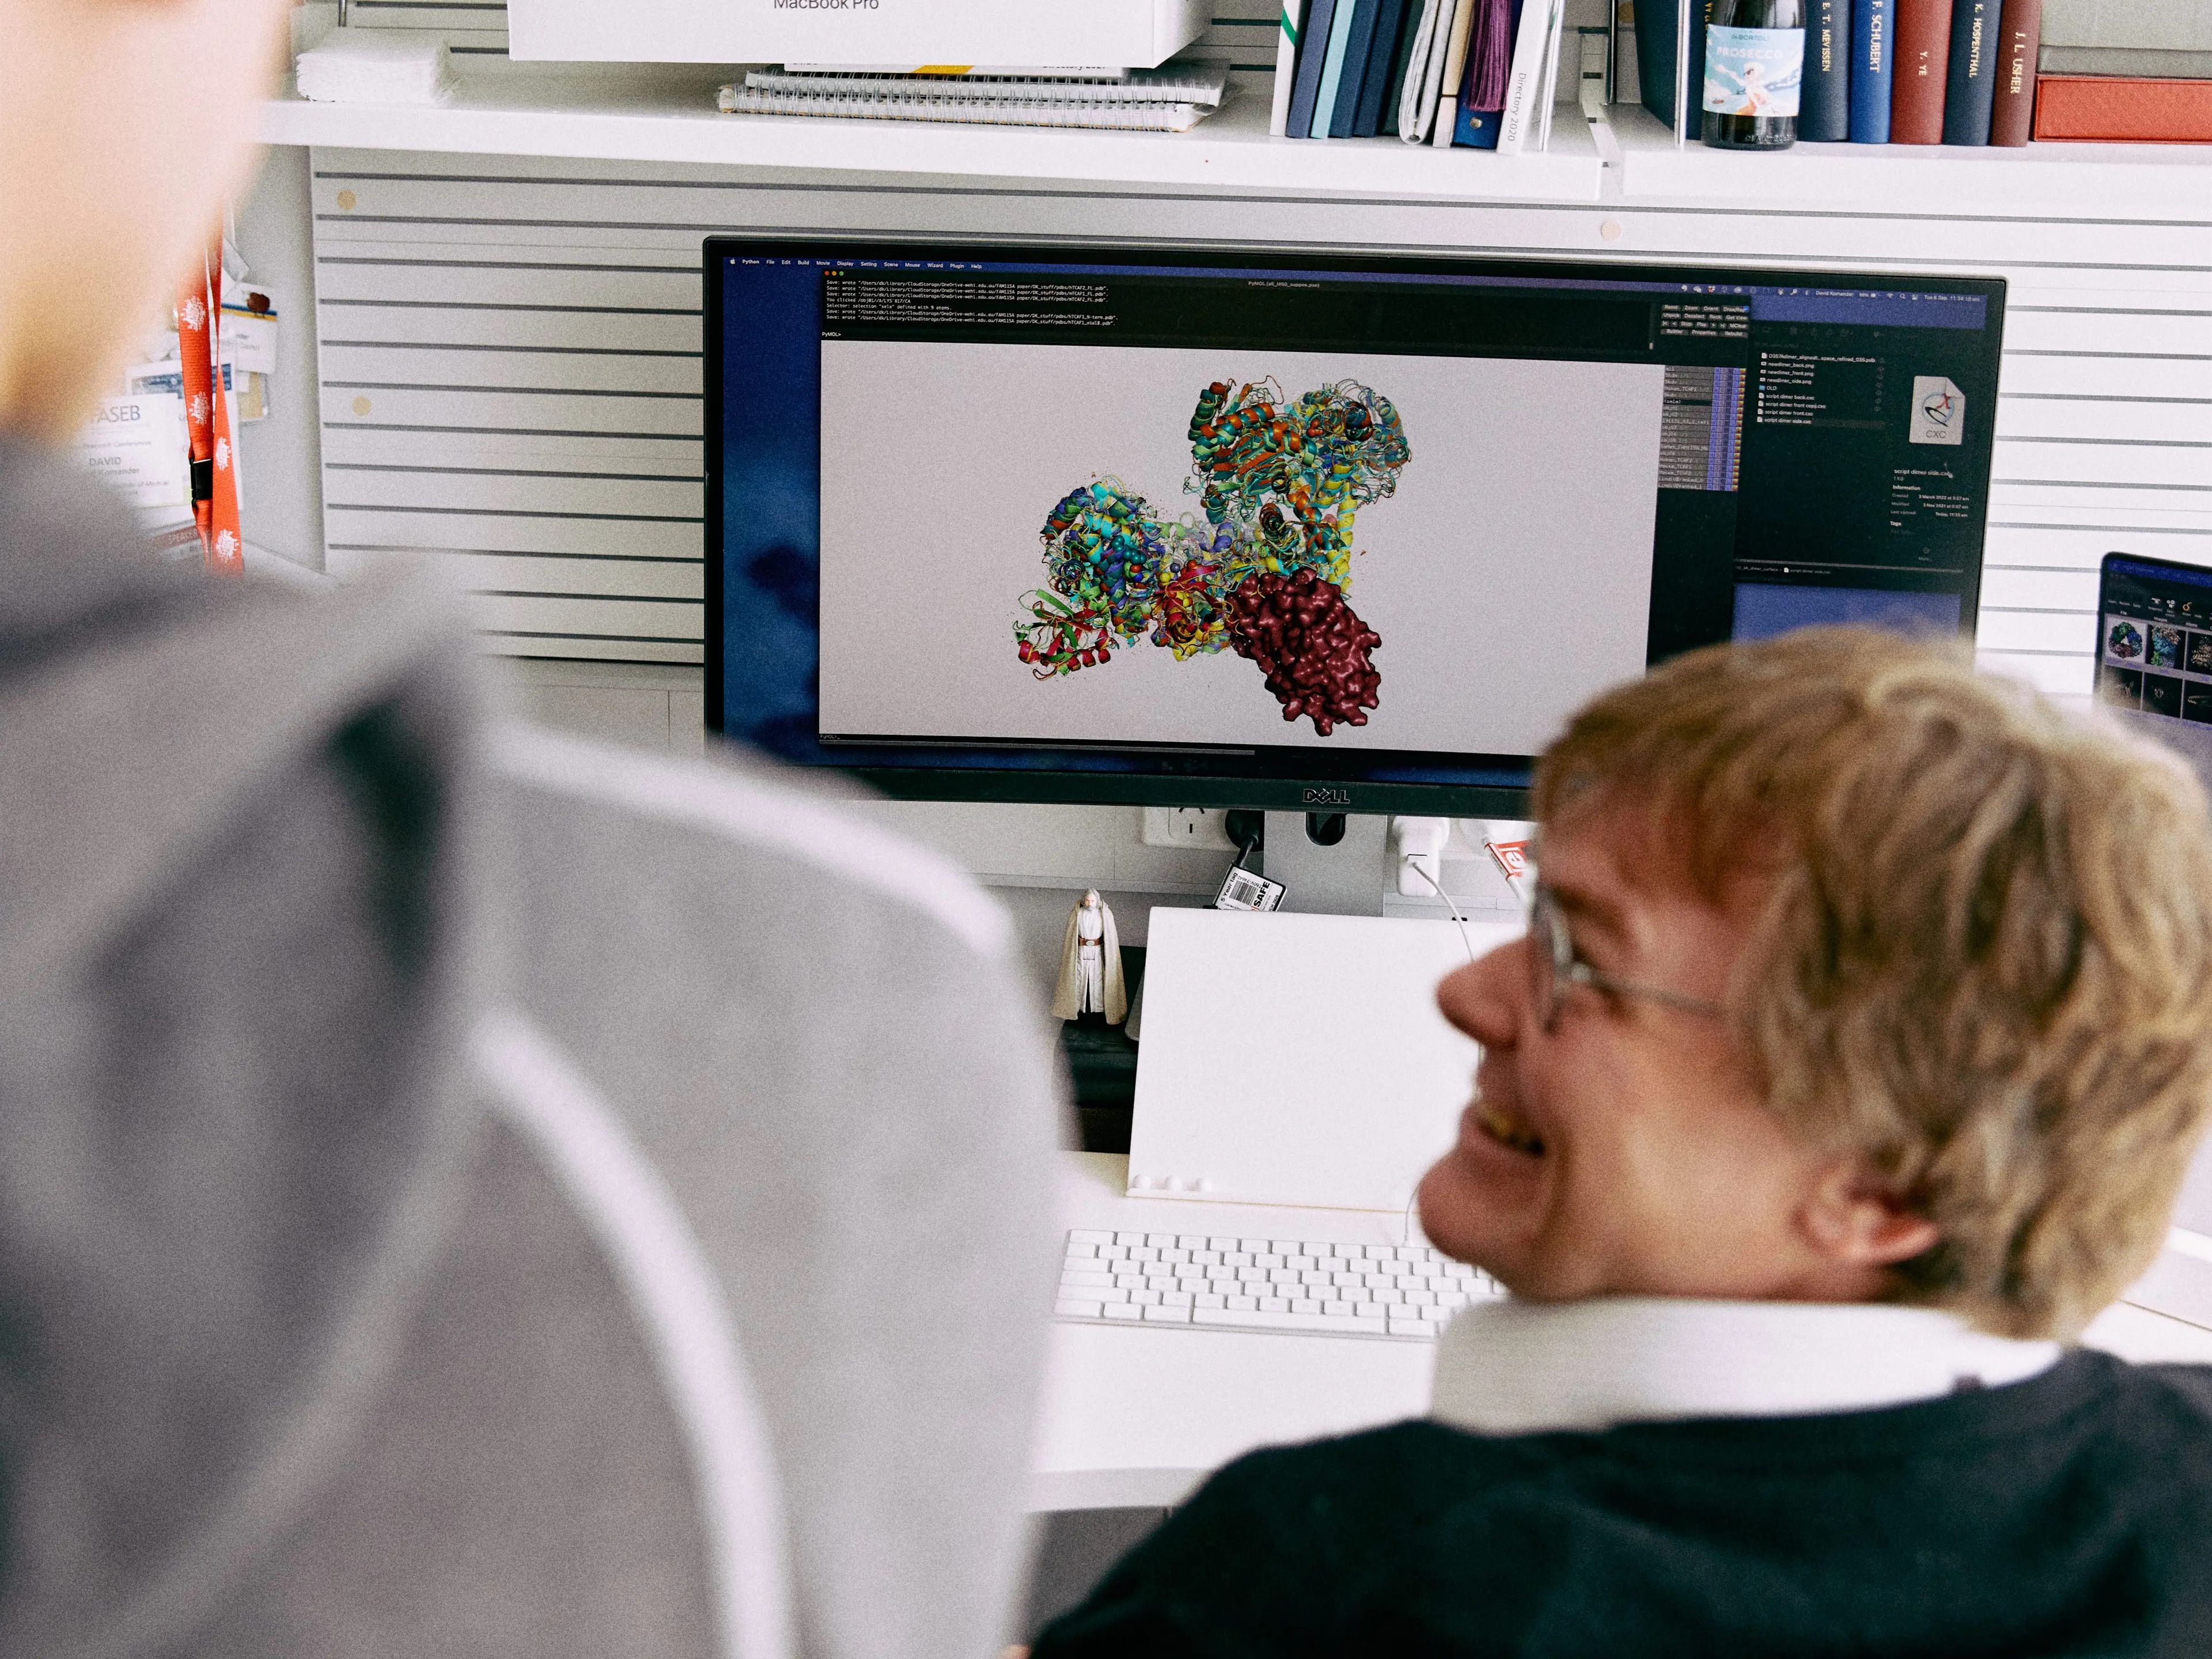 Investigadores del Instituto de Investigación Médica Walter y el Eliza Hall de Melbourne utilizan la tecnología AlphaFold 2 de DeepMind para predecir estructuras de proteínas mientras investigan el Parkinson.